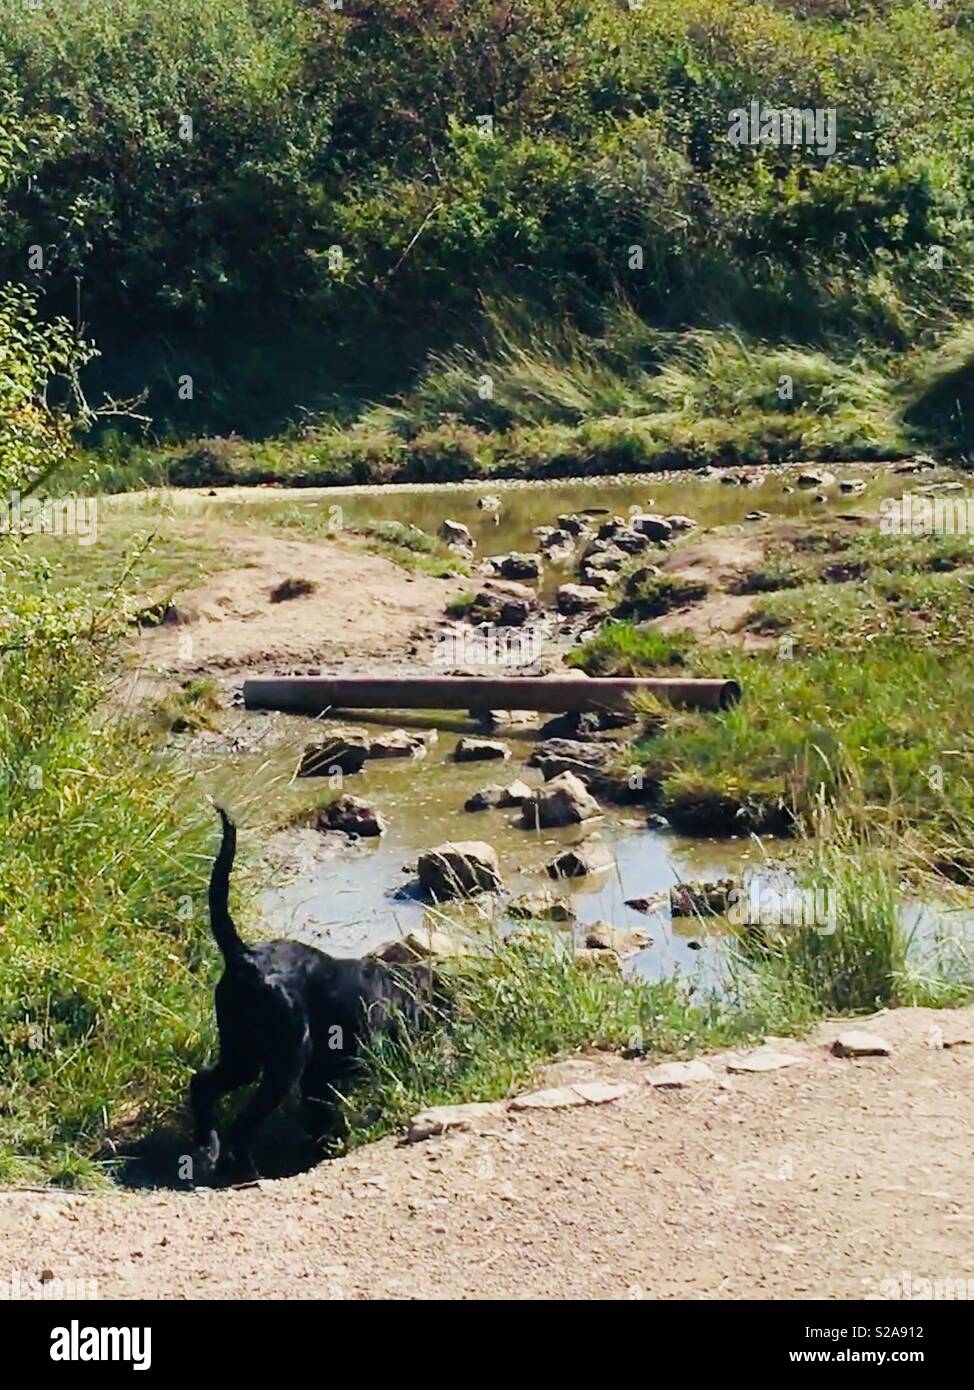 Nero cucciolo di cane con lunga coda ad esplorare il fiume, erba lunga e pietre miliari Foto Stock